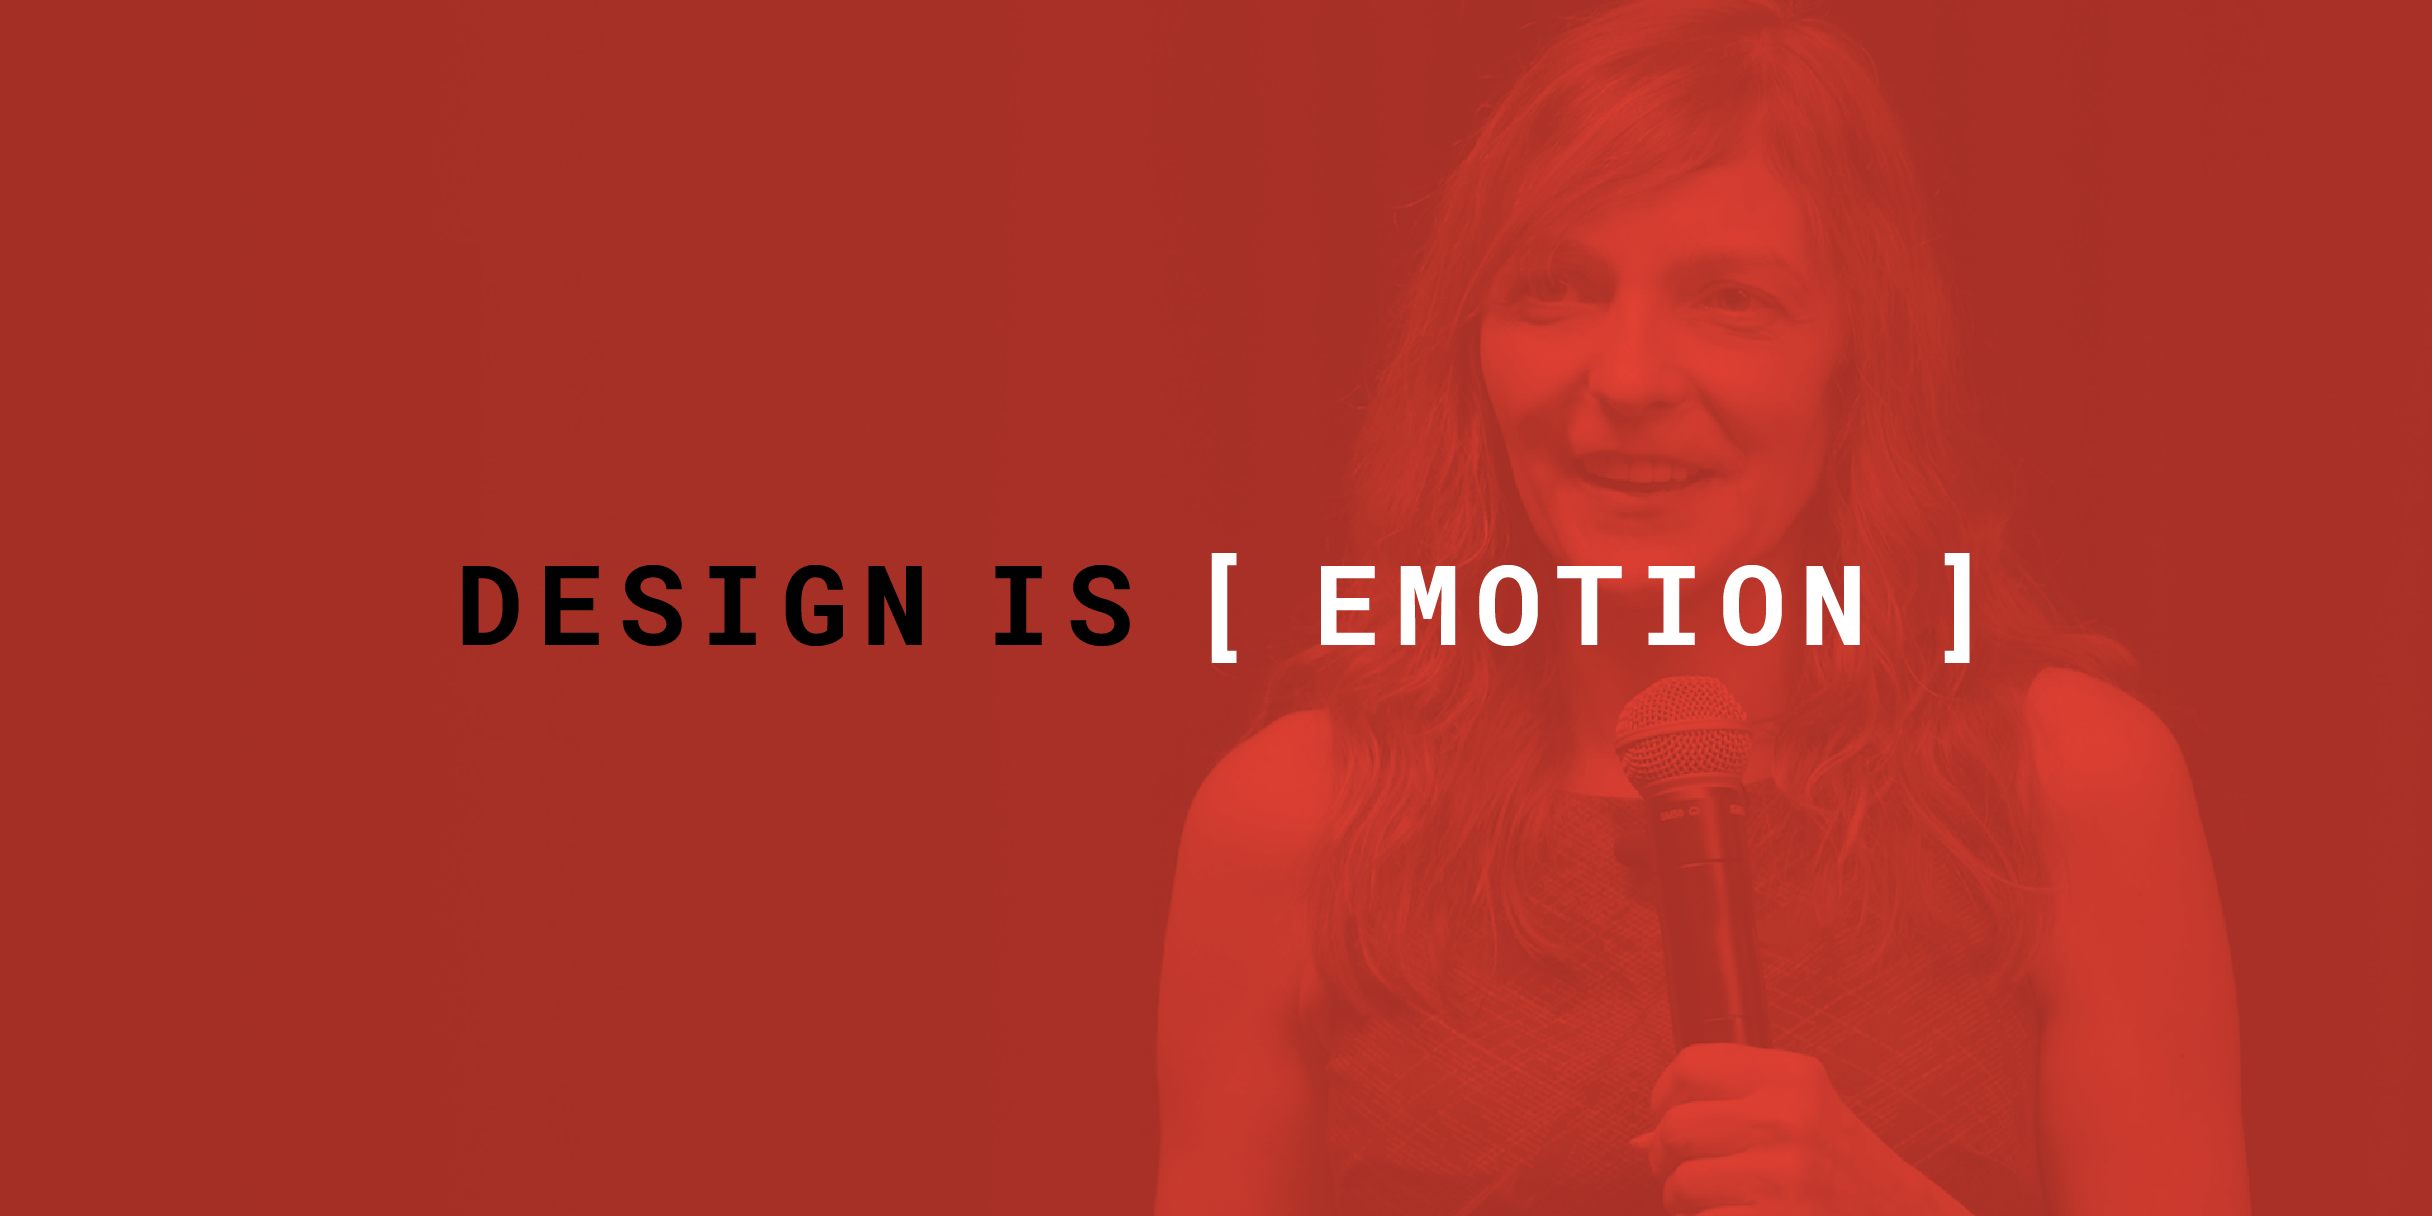 design_is_emotion_2x1.png